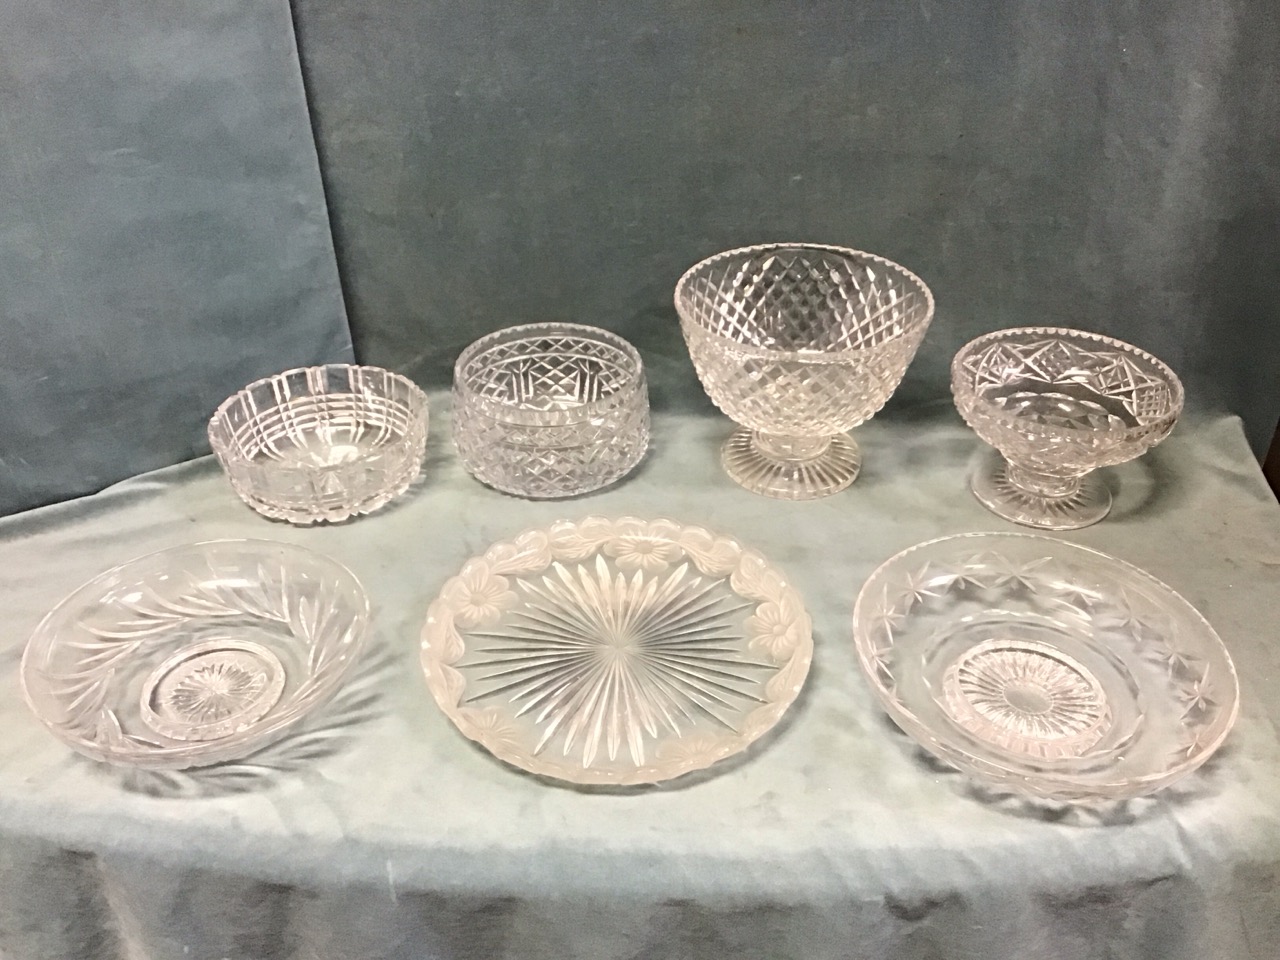 Miscellaneous cut glass bowls - two Stuart shallow footed, a Stuart pedestal punch bowl, a Harbridge